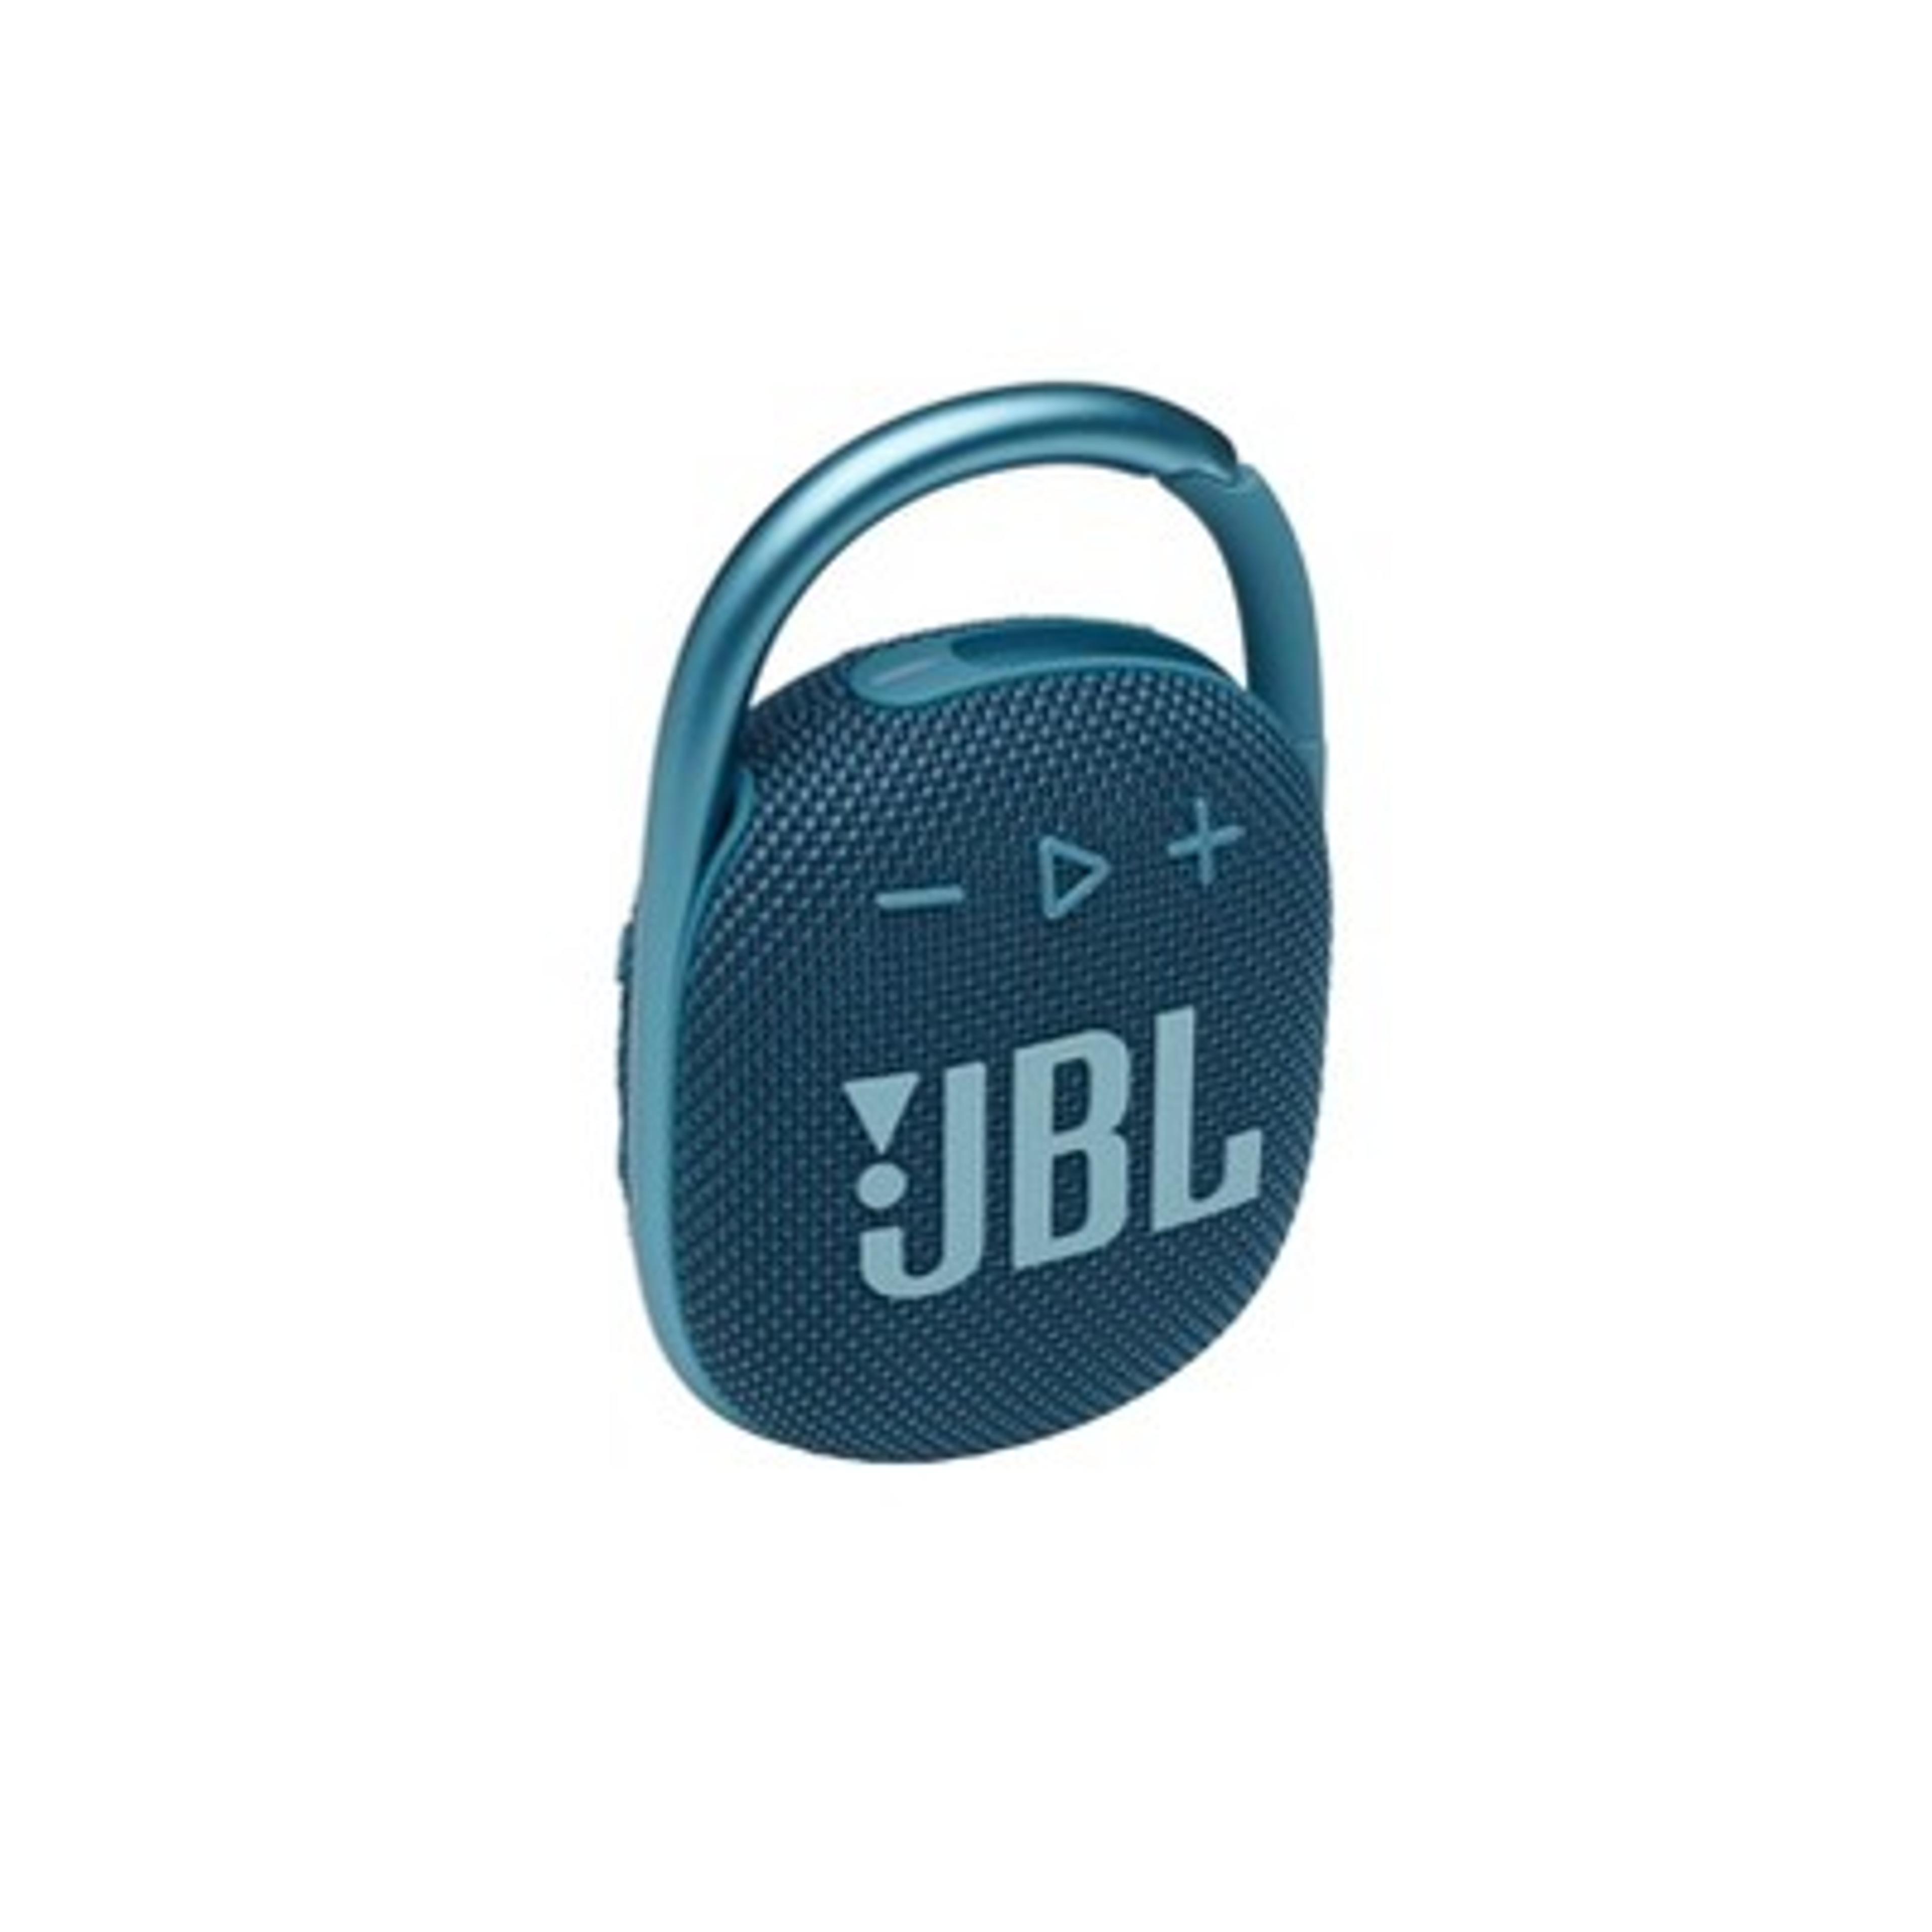 Jbl Clip 4 Portable Bluetooth Waterproof Speaker - Blue : Target